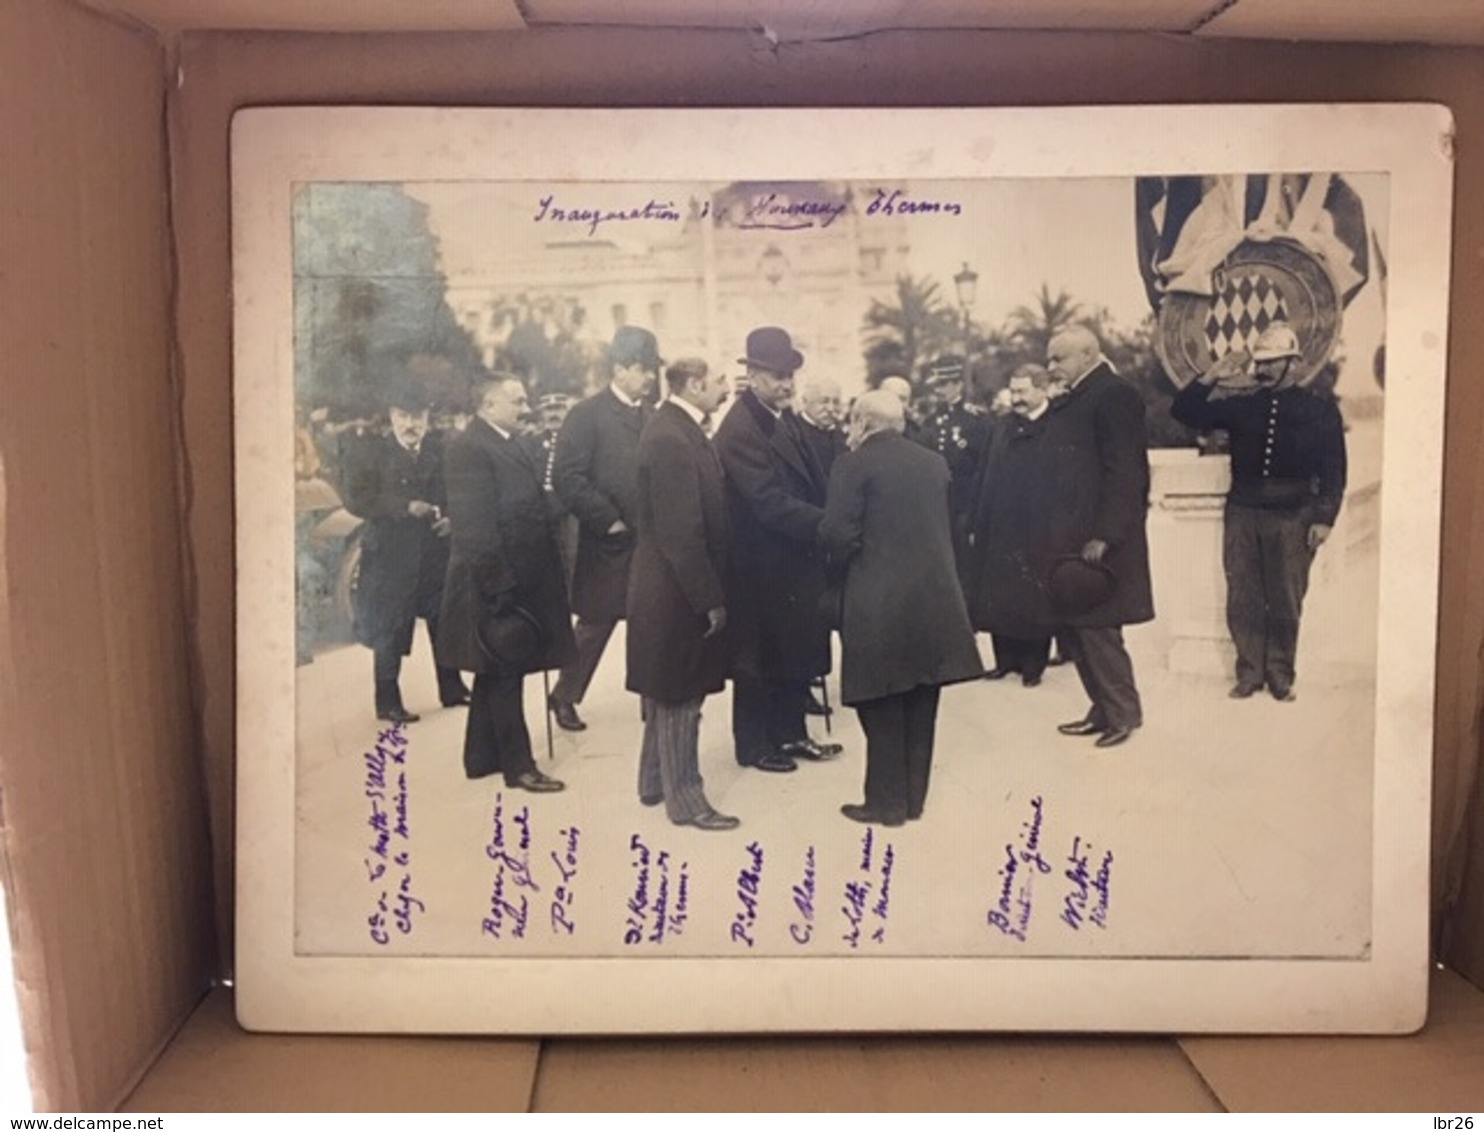 RARE PHOTO MONACO Prince ALBERT I Inauguration Des Nouveaux Thermes 1908 - Personnes Identifiées